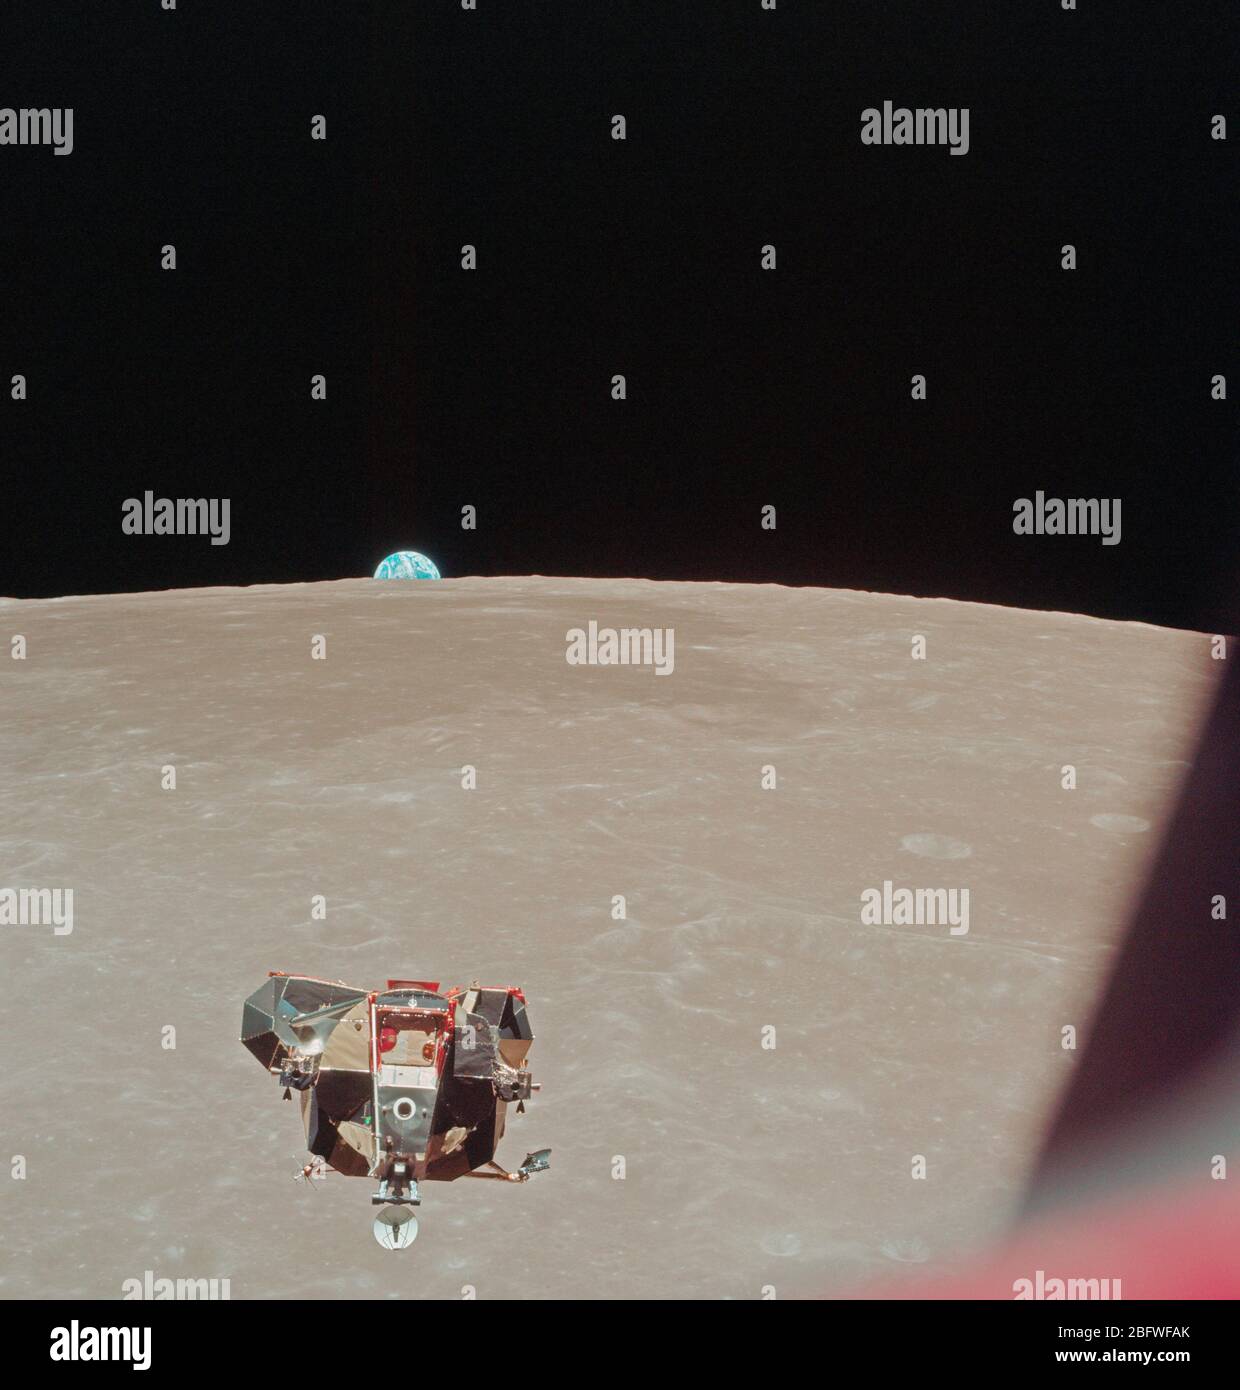 L'Apollo 11 Modulo Lunare (LM) di ascesa, con gli astronauti a Neil Armstrong e Edwin E. Aldrin Jr. onboard, è fotografato dal comando e moduli di servizi (CSM) in orbita lunare. Foto Stock